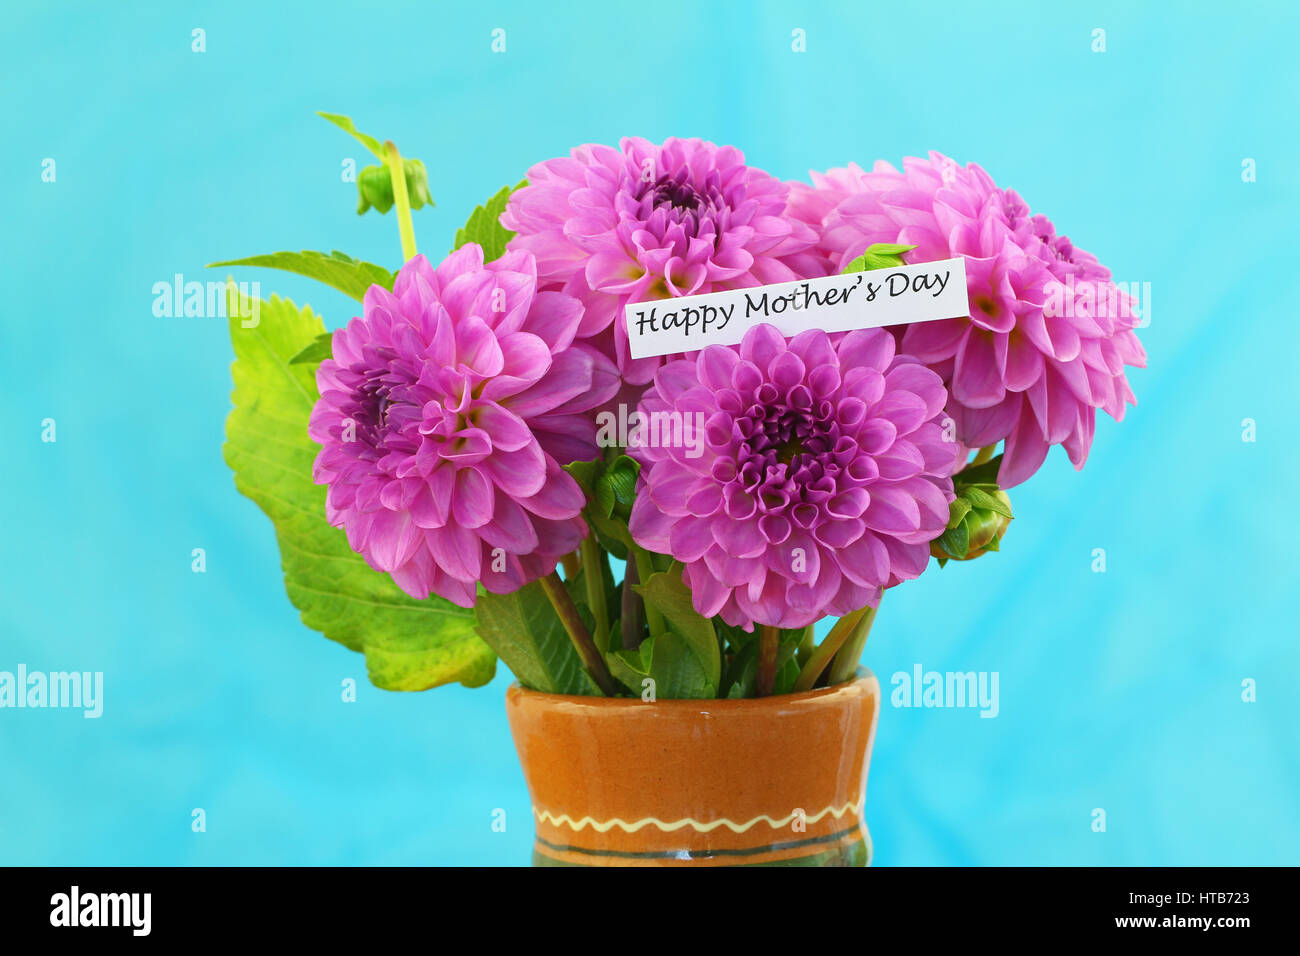 Happy Mother's Day card avec dahlia rose fleurs dans vase d'argile sur fond bleu Banque D'Images